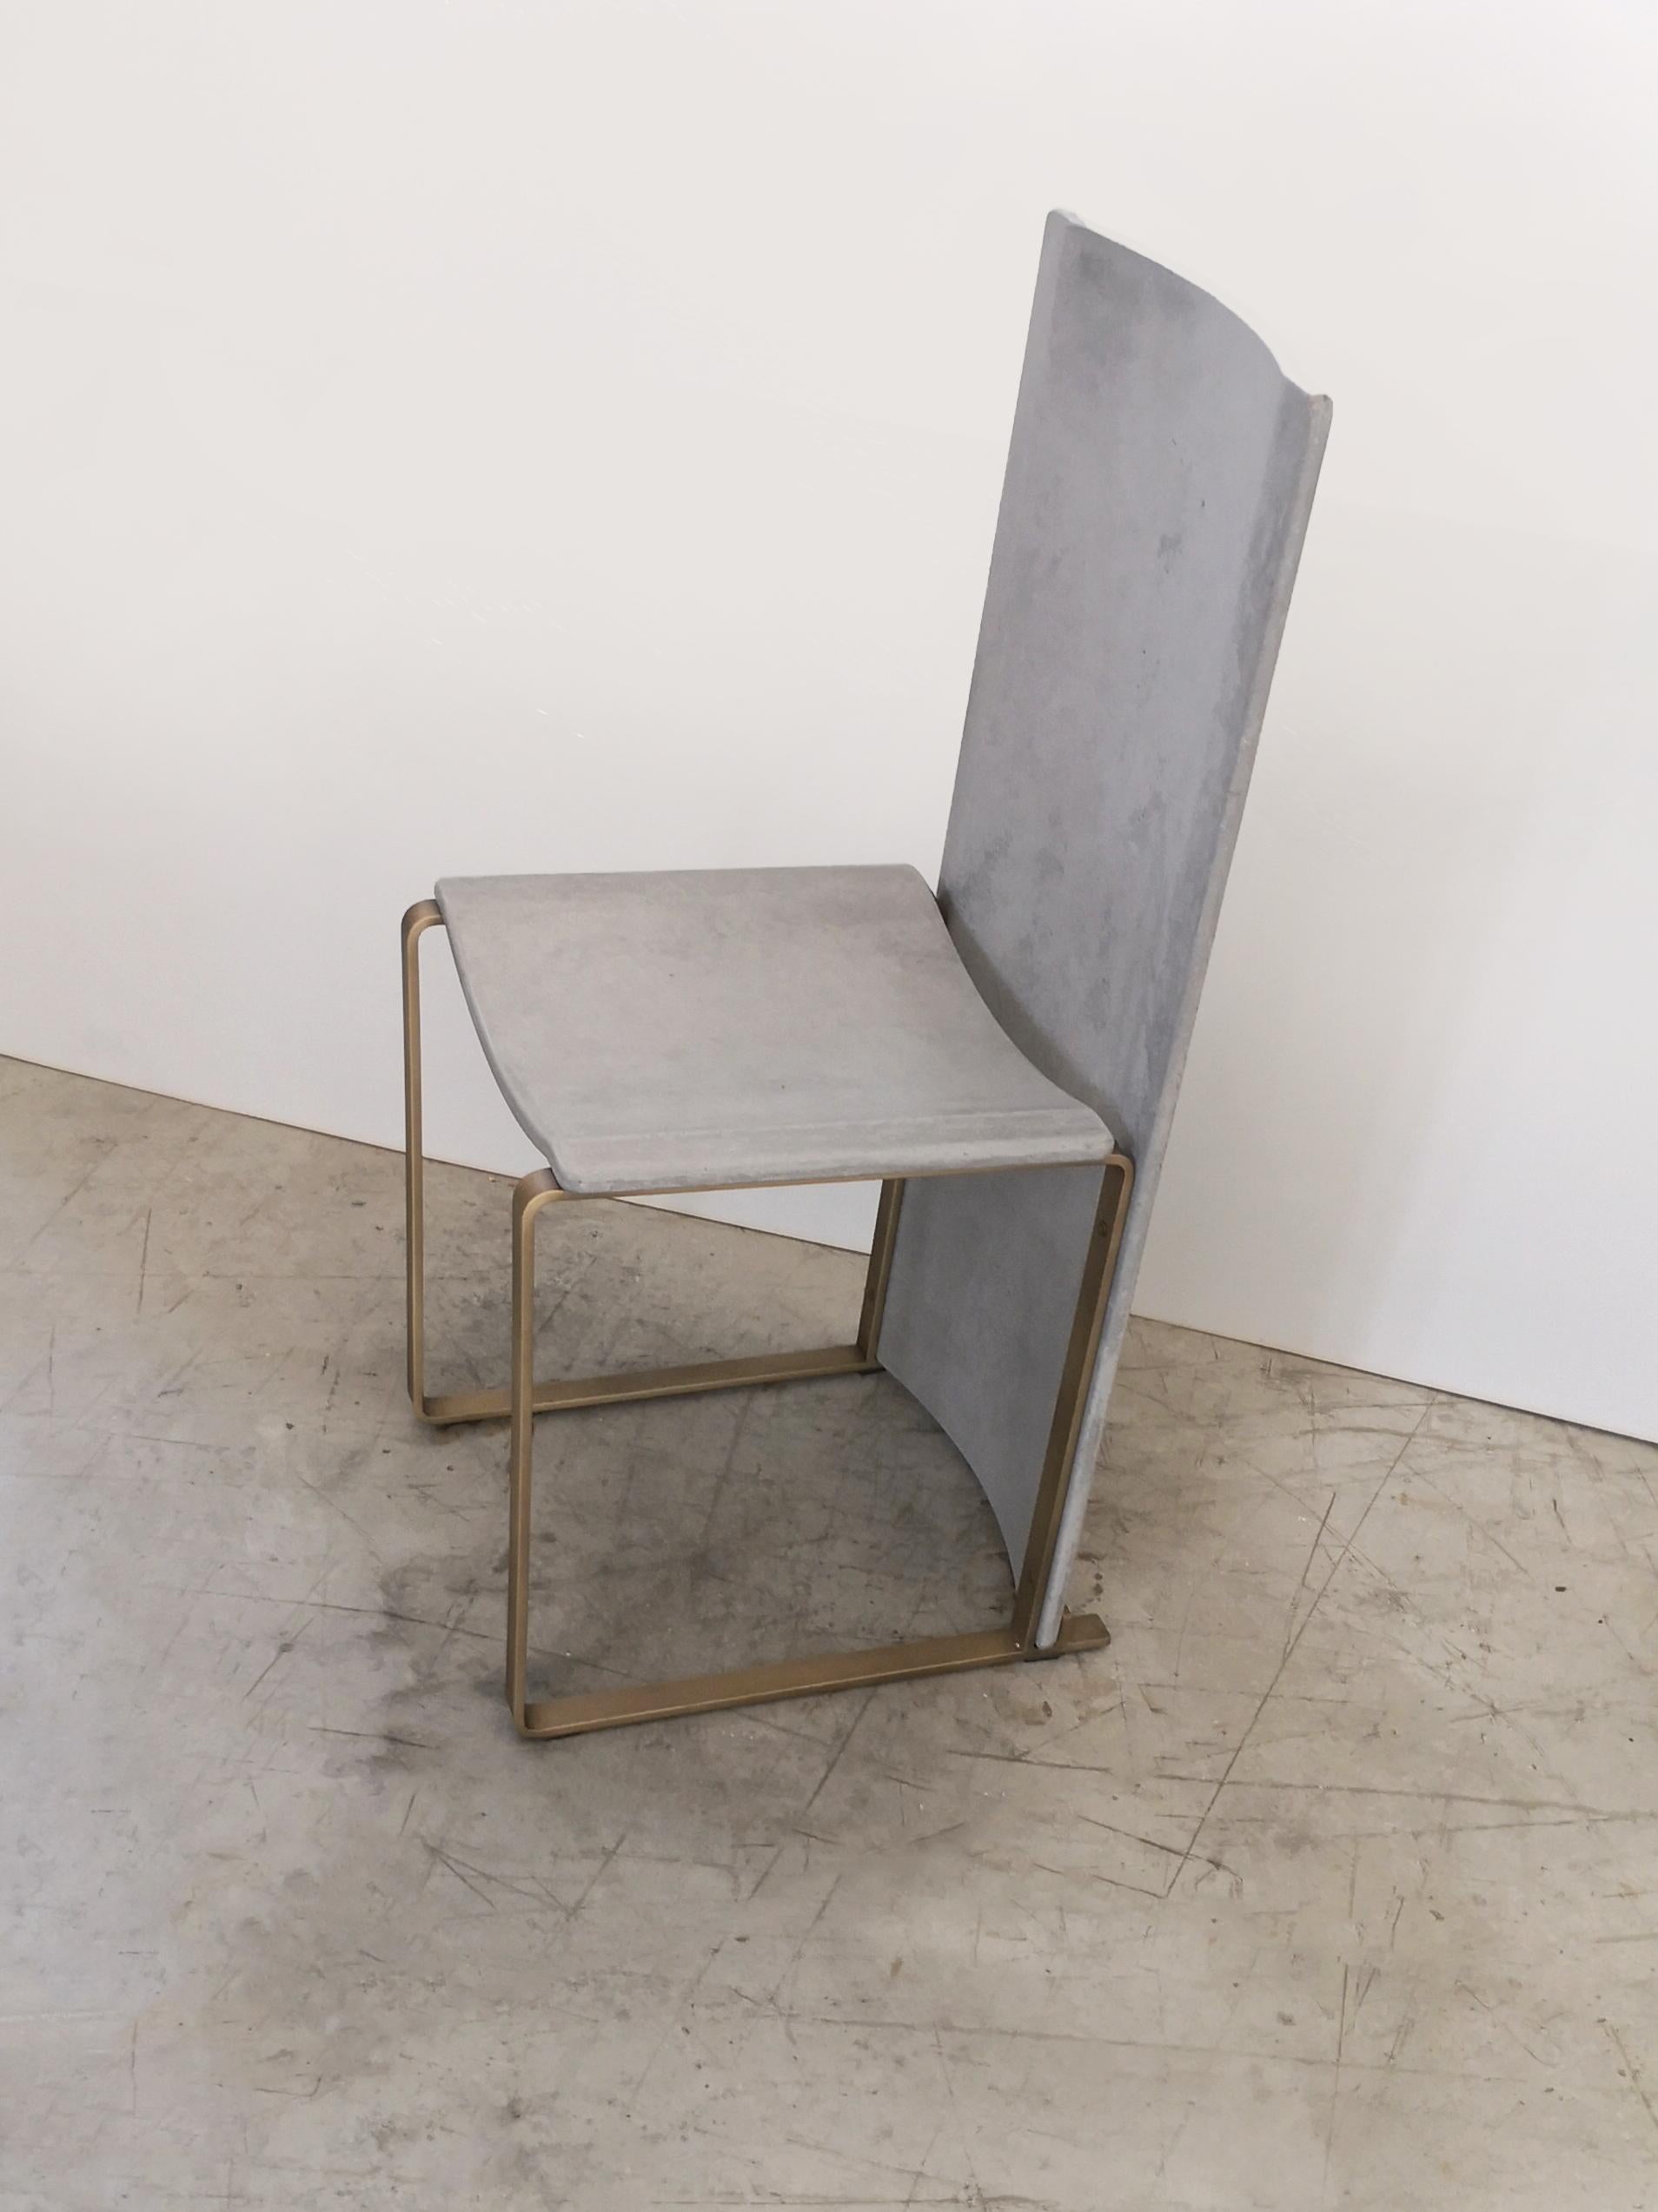 Rubeda concrete chair design Roberto Giacomucci 2018 For Sale 2